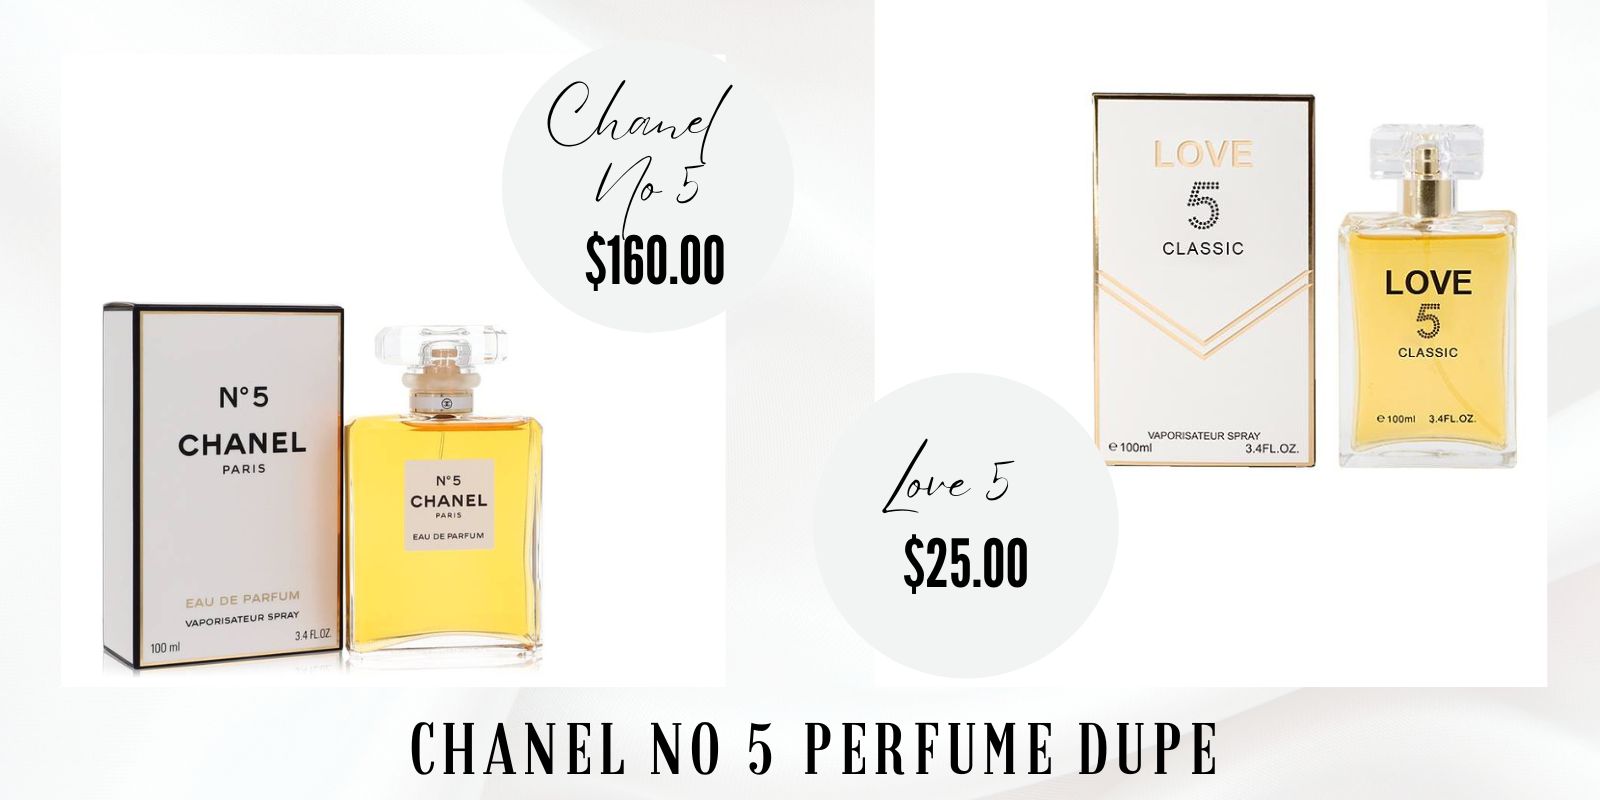 Chanel No 5 Dupe: Love 5 Classic Eau de Parfum